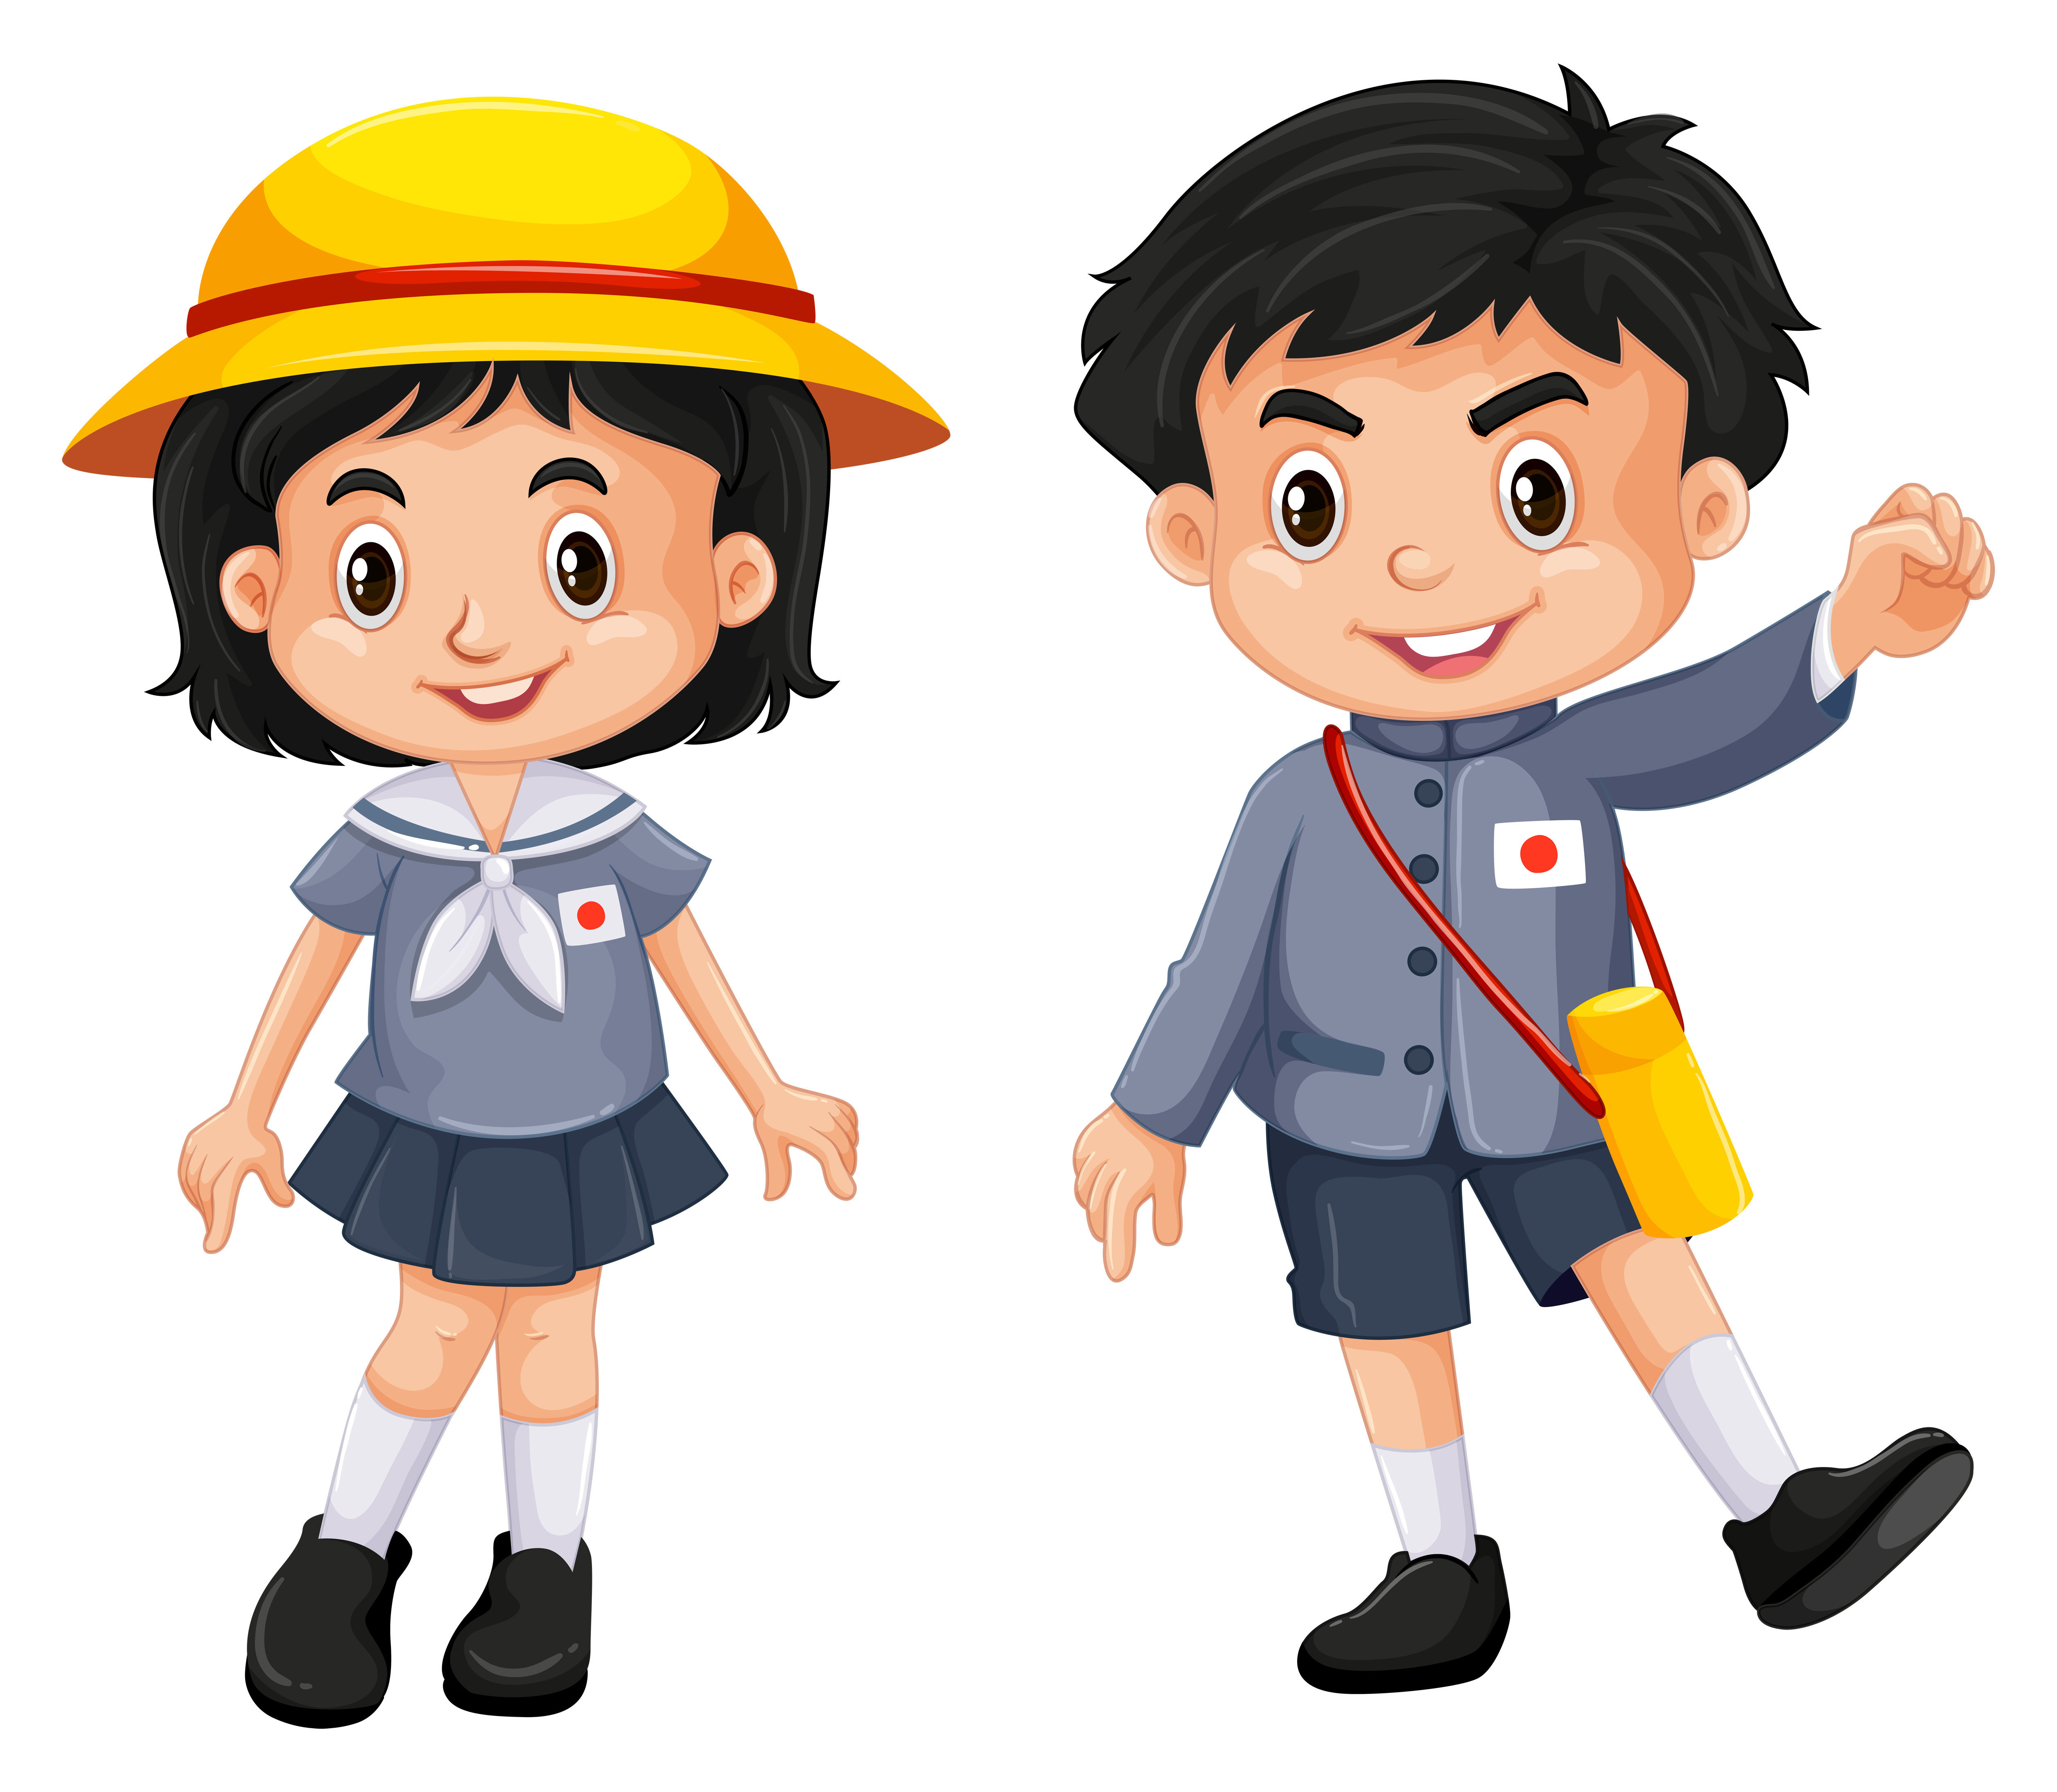 Japanese boy and girl in school uniform 607748 Vector Art at Vecteezy